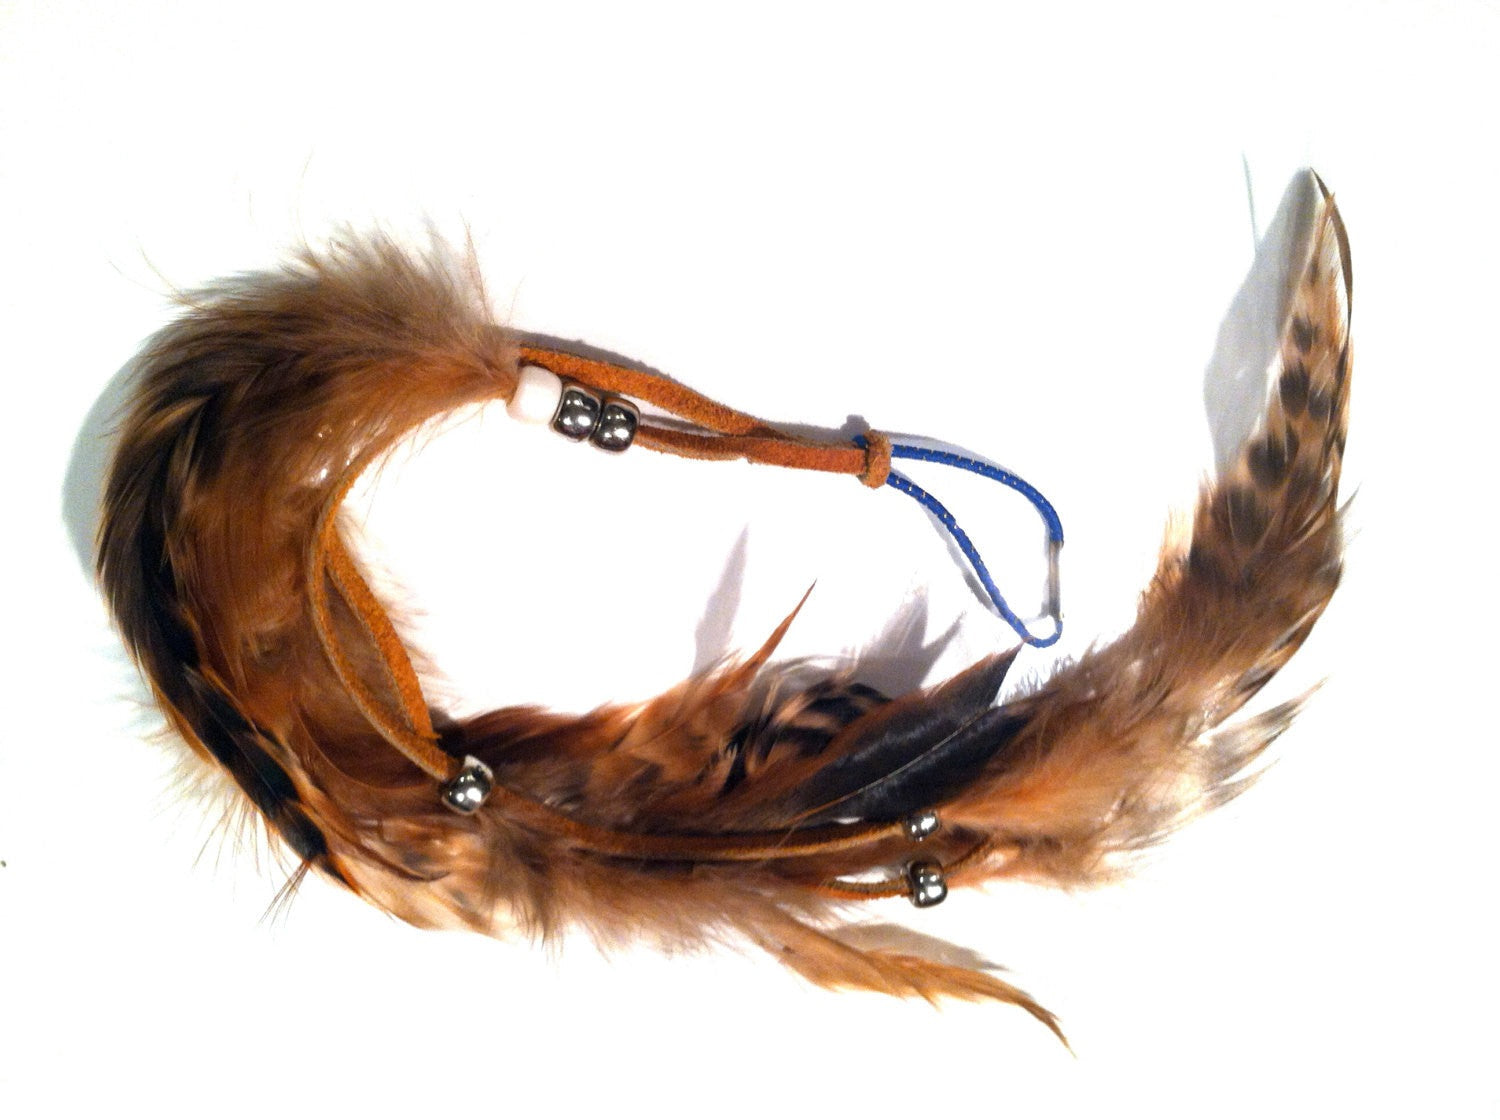 HAIR Extension Genuine Bird Feathers Orange Brown Handmade Hair piece Design Indian Native American Wild West Vintage talkingfashion